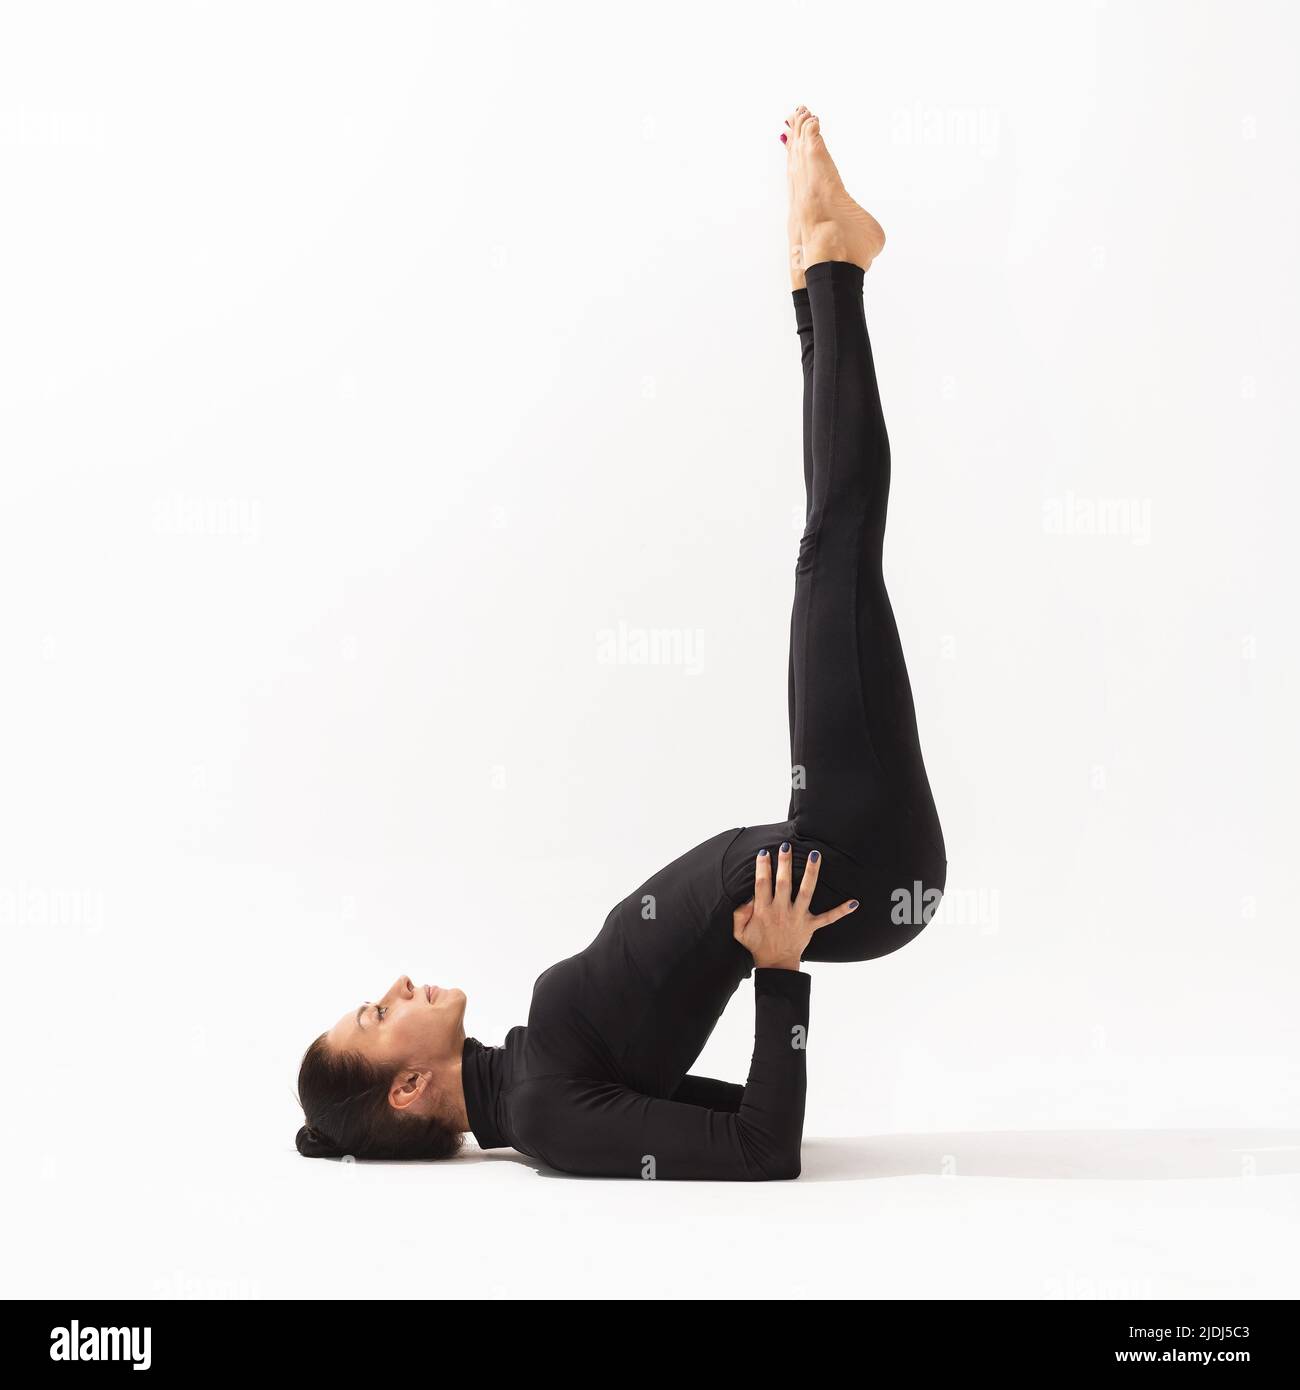 Una mujer de ropa deportiva negra que practica yoga realiza el ejercicio Viparita Karani, puesta de vela invertida, sobre un fondo blanco Foto de stock